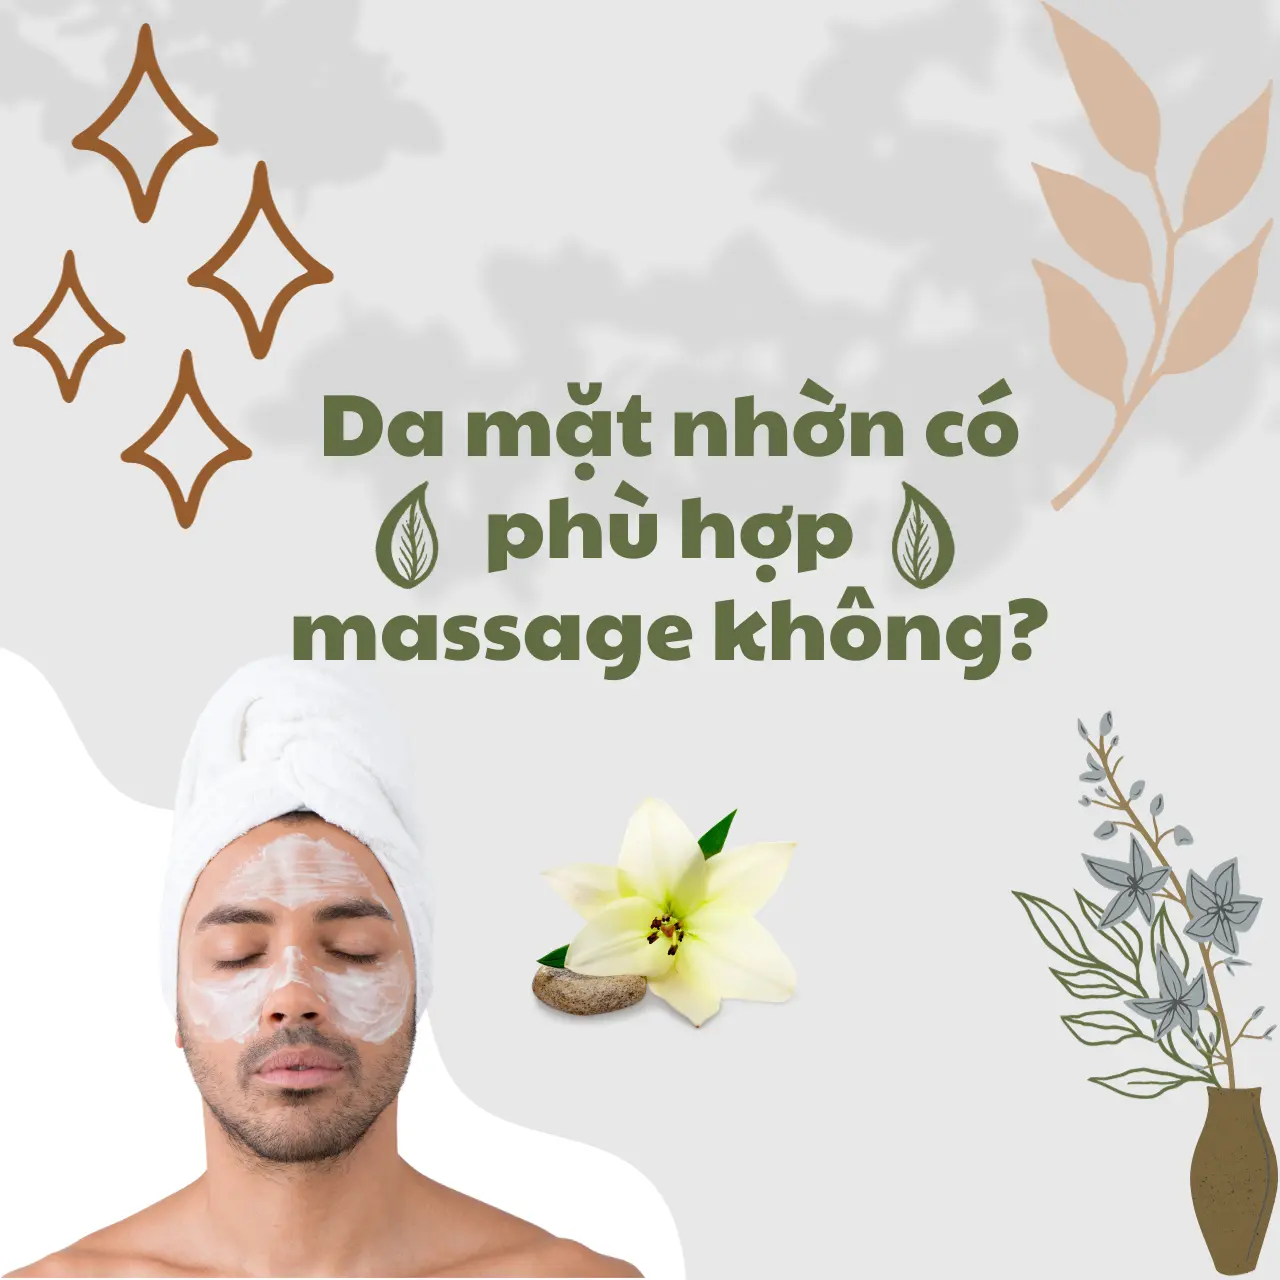 Da mặt nhờn có phù hợp massage không?